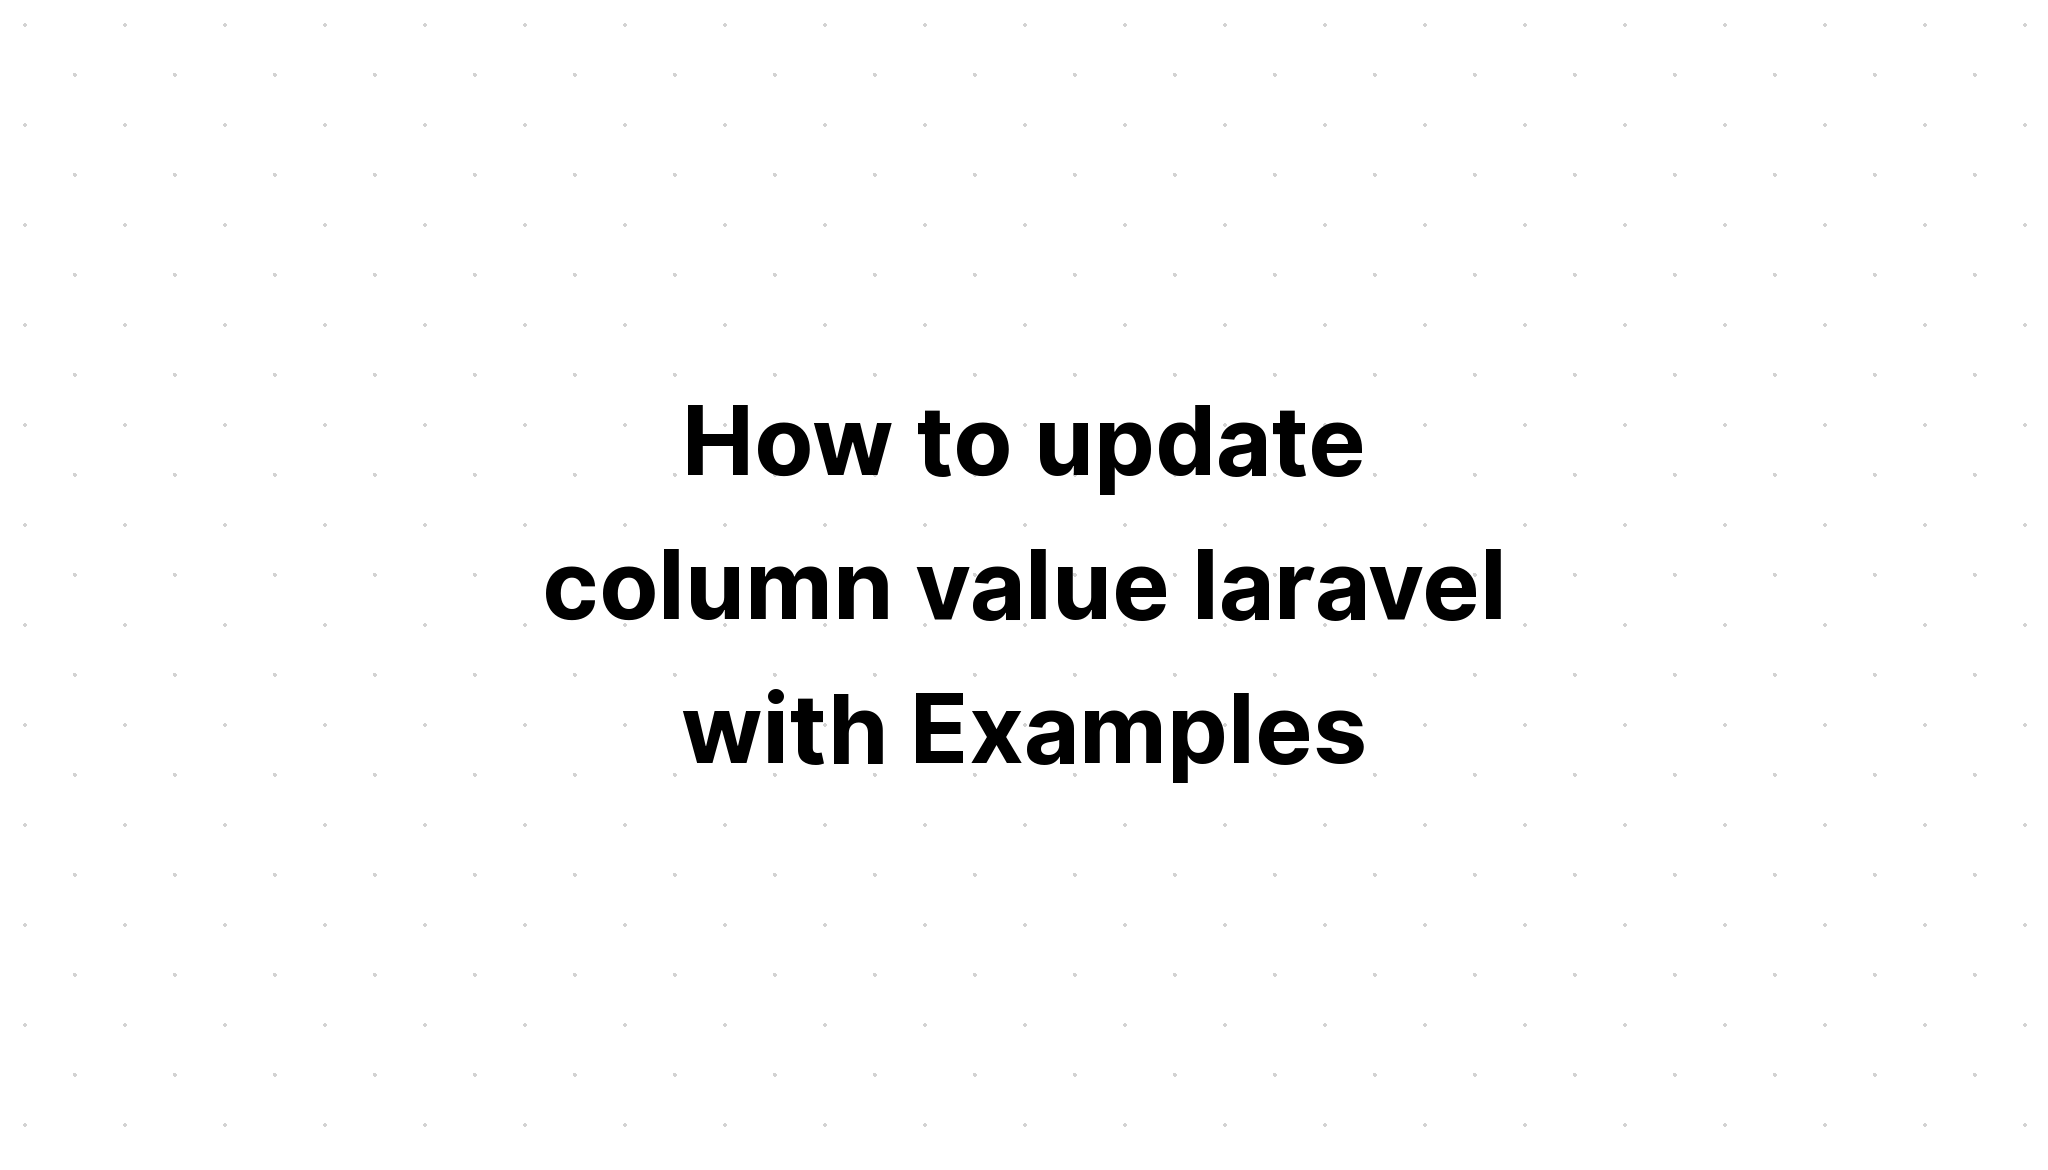 Cách cập nhật giá trị cột laravel với Ví dụ